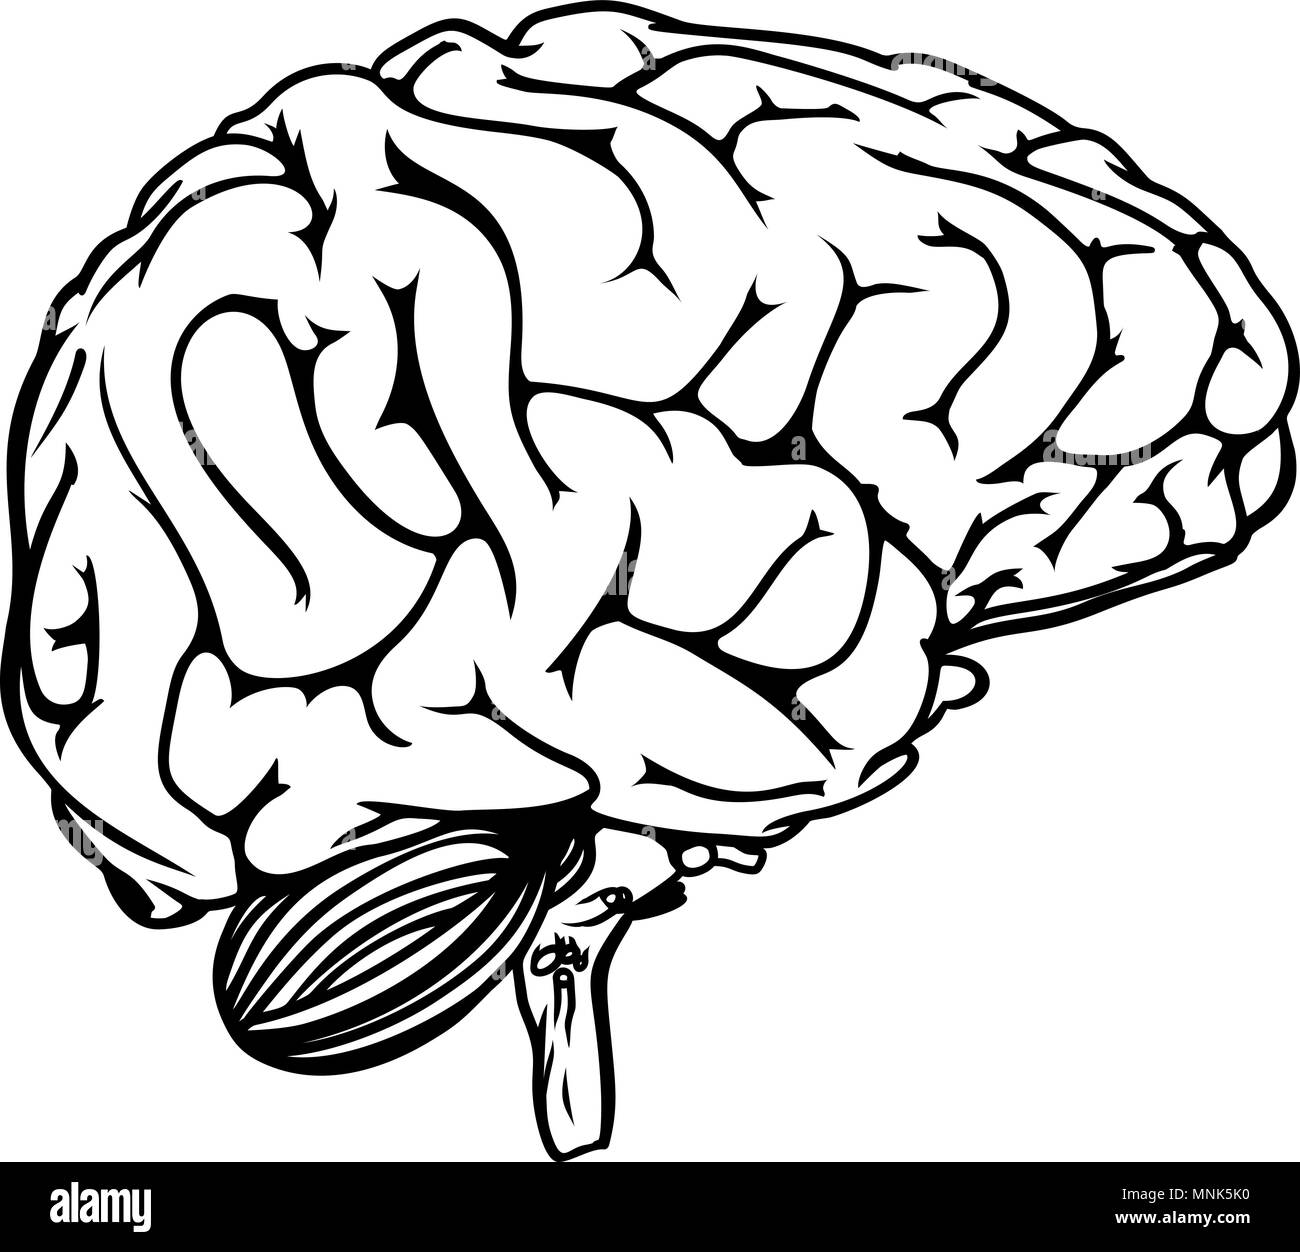 Cerebro humano Ilustración del Vector